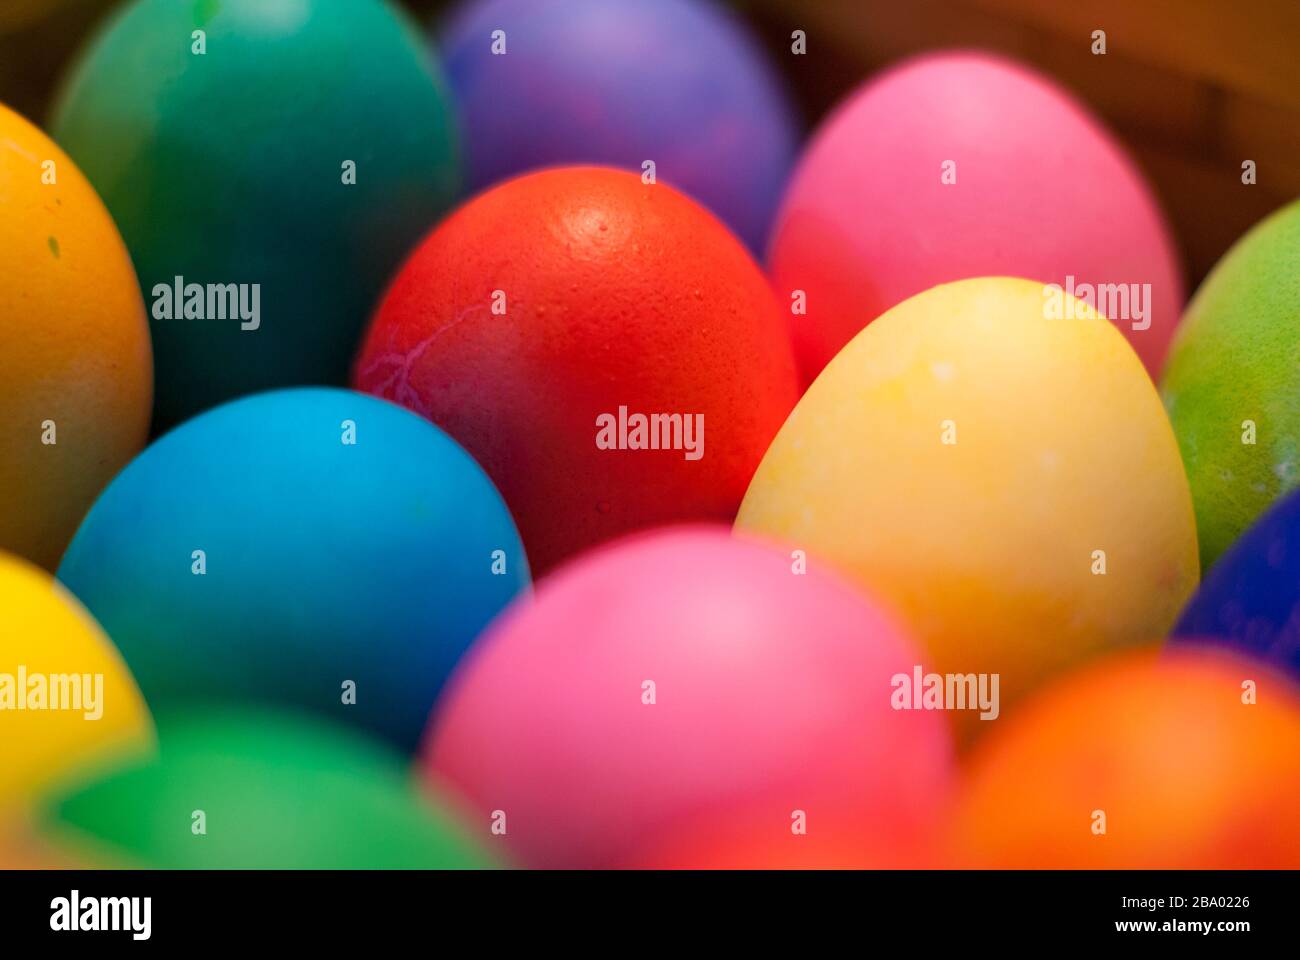 Primo piano di più uova tinte blu, rosa, rosso, giallo, arancione e verde che circondano un uovo rosso a fuoco nel mezzo Foto Stock